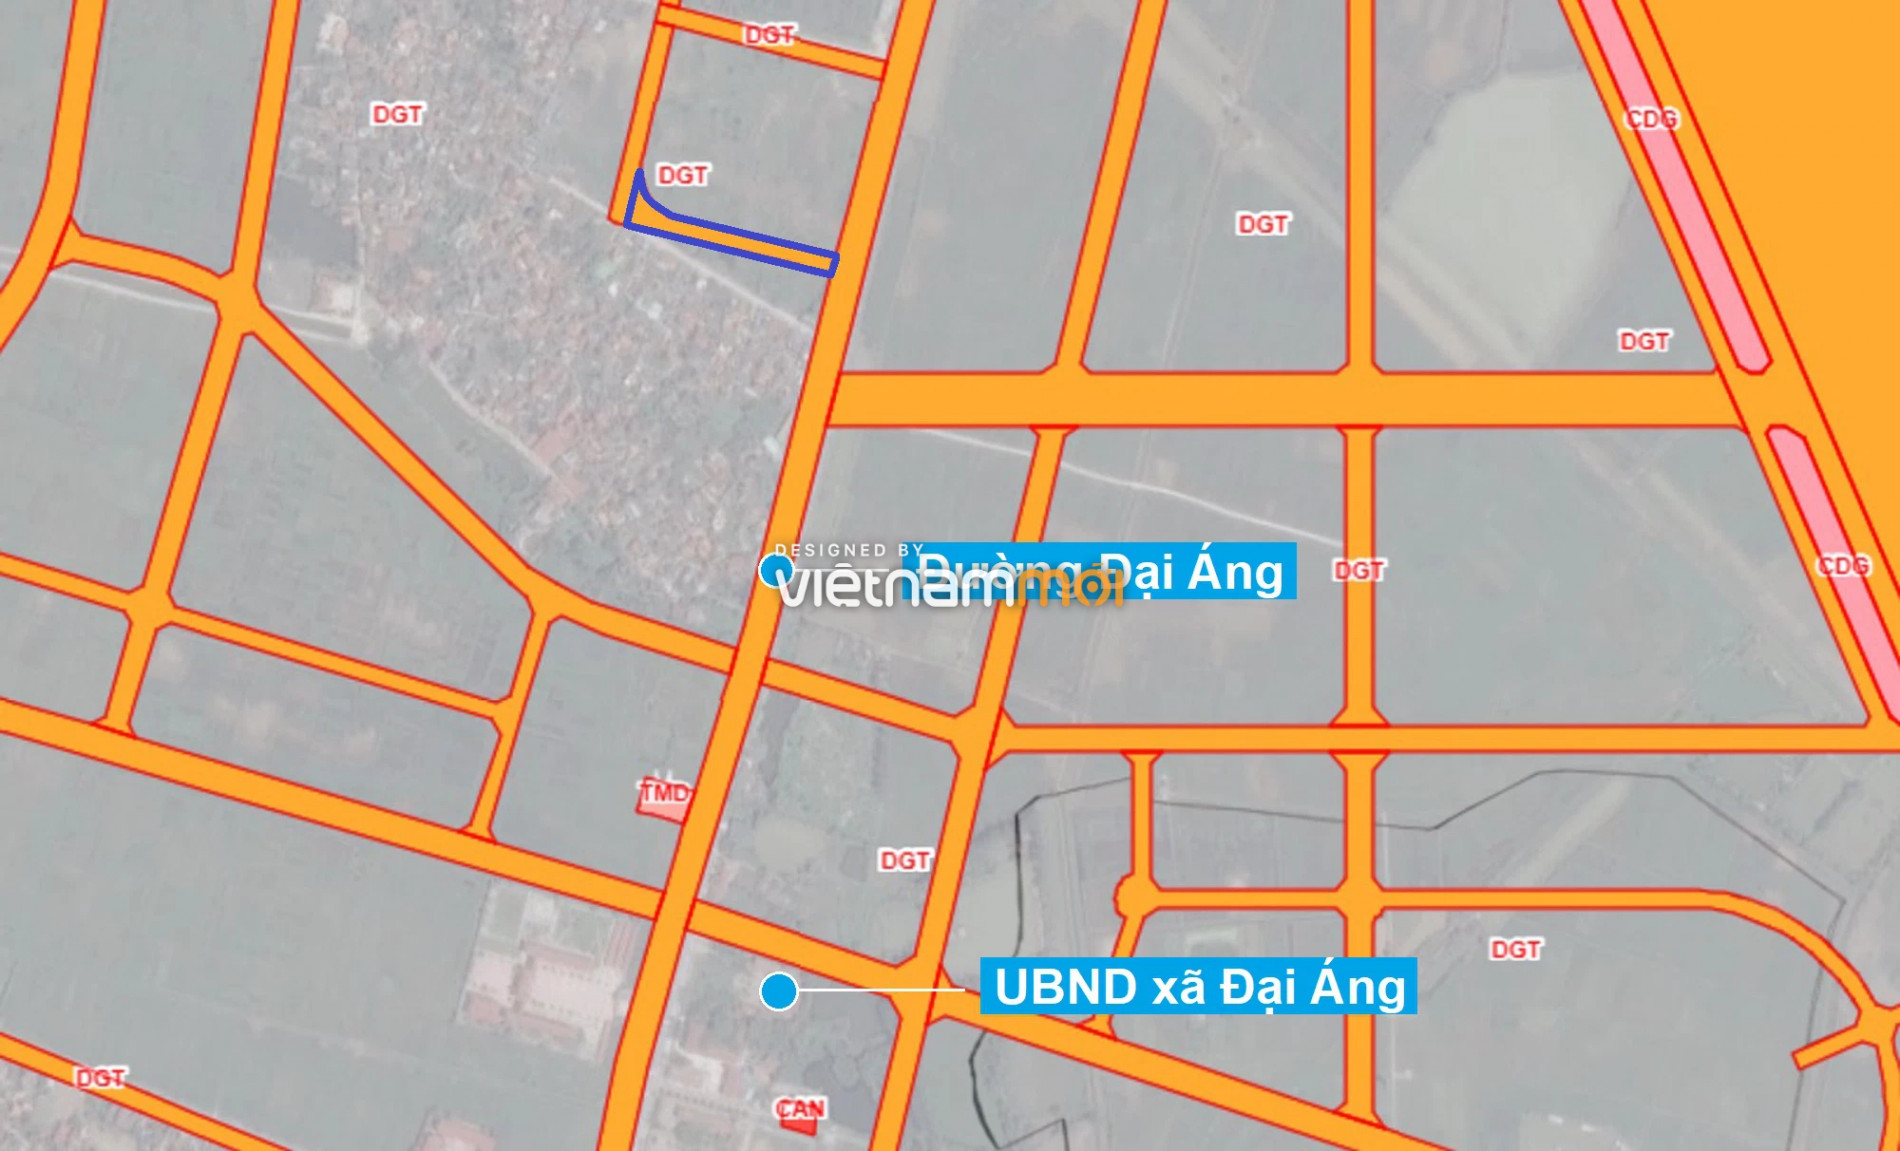 Những khu đất sắp thu hồi để mở đường ở xã Đại Áng, Thanh Trì, Hà Nội (phần 3) - Ảnh 2.